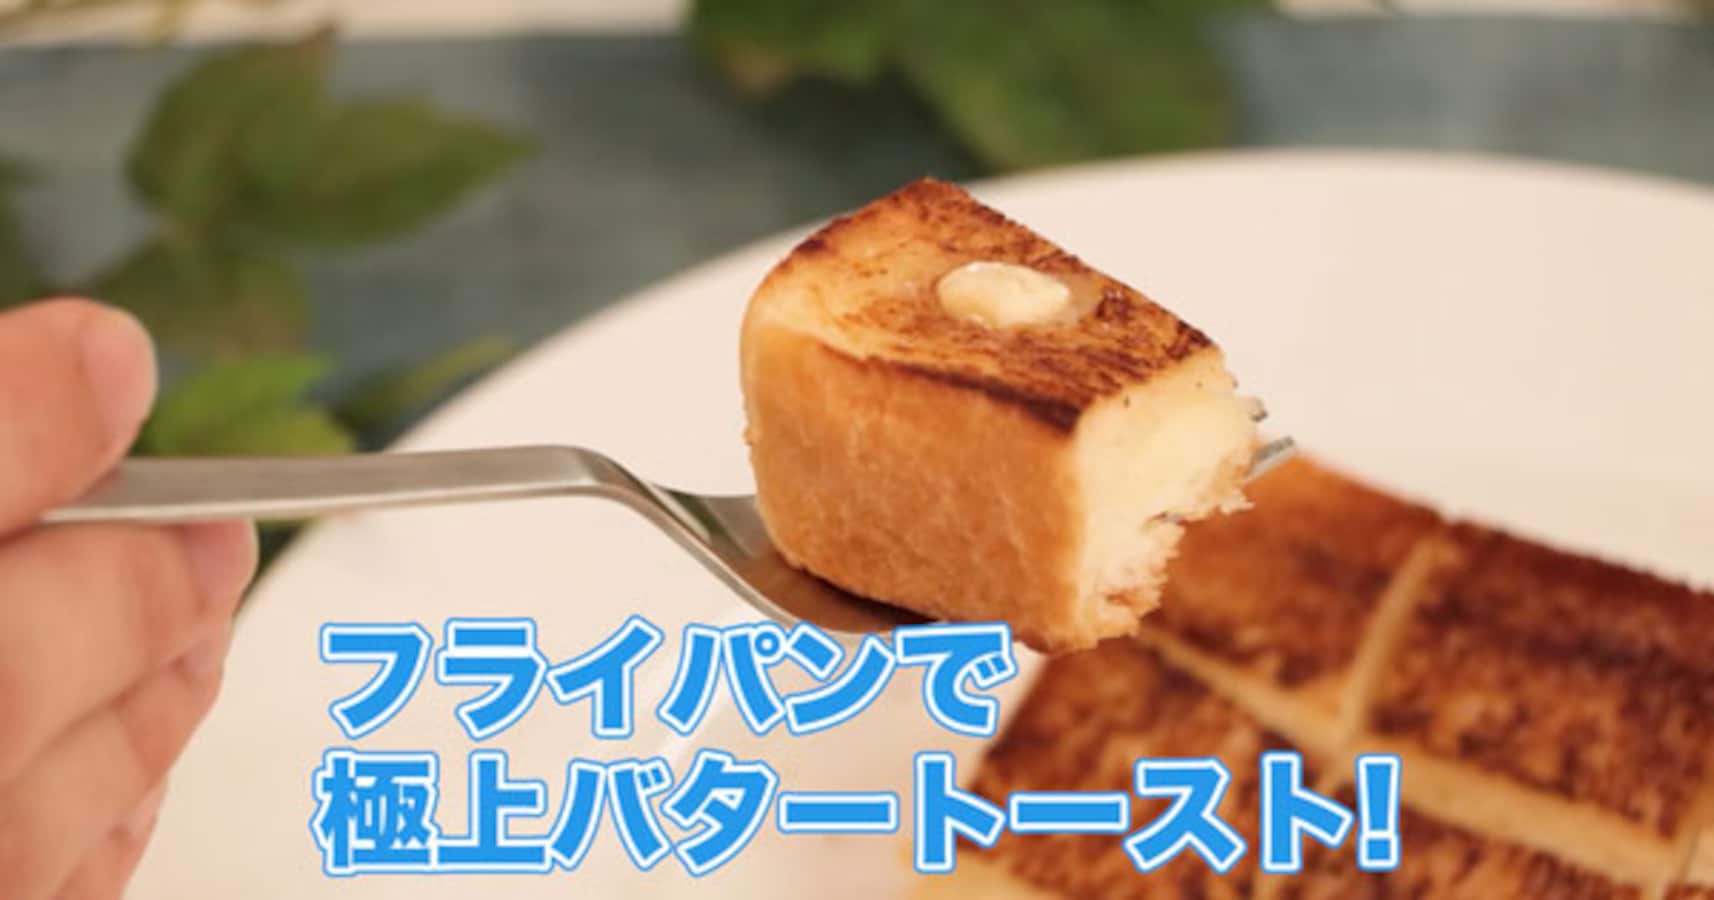 こんなに簡単に作れるの フライパンで焼く極上バタートーストがうますぎる Facebook Navi フェイスブックナビ